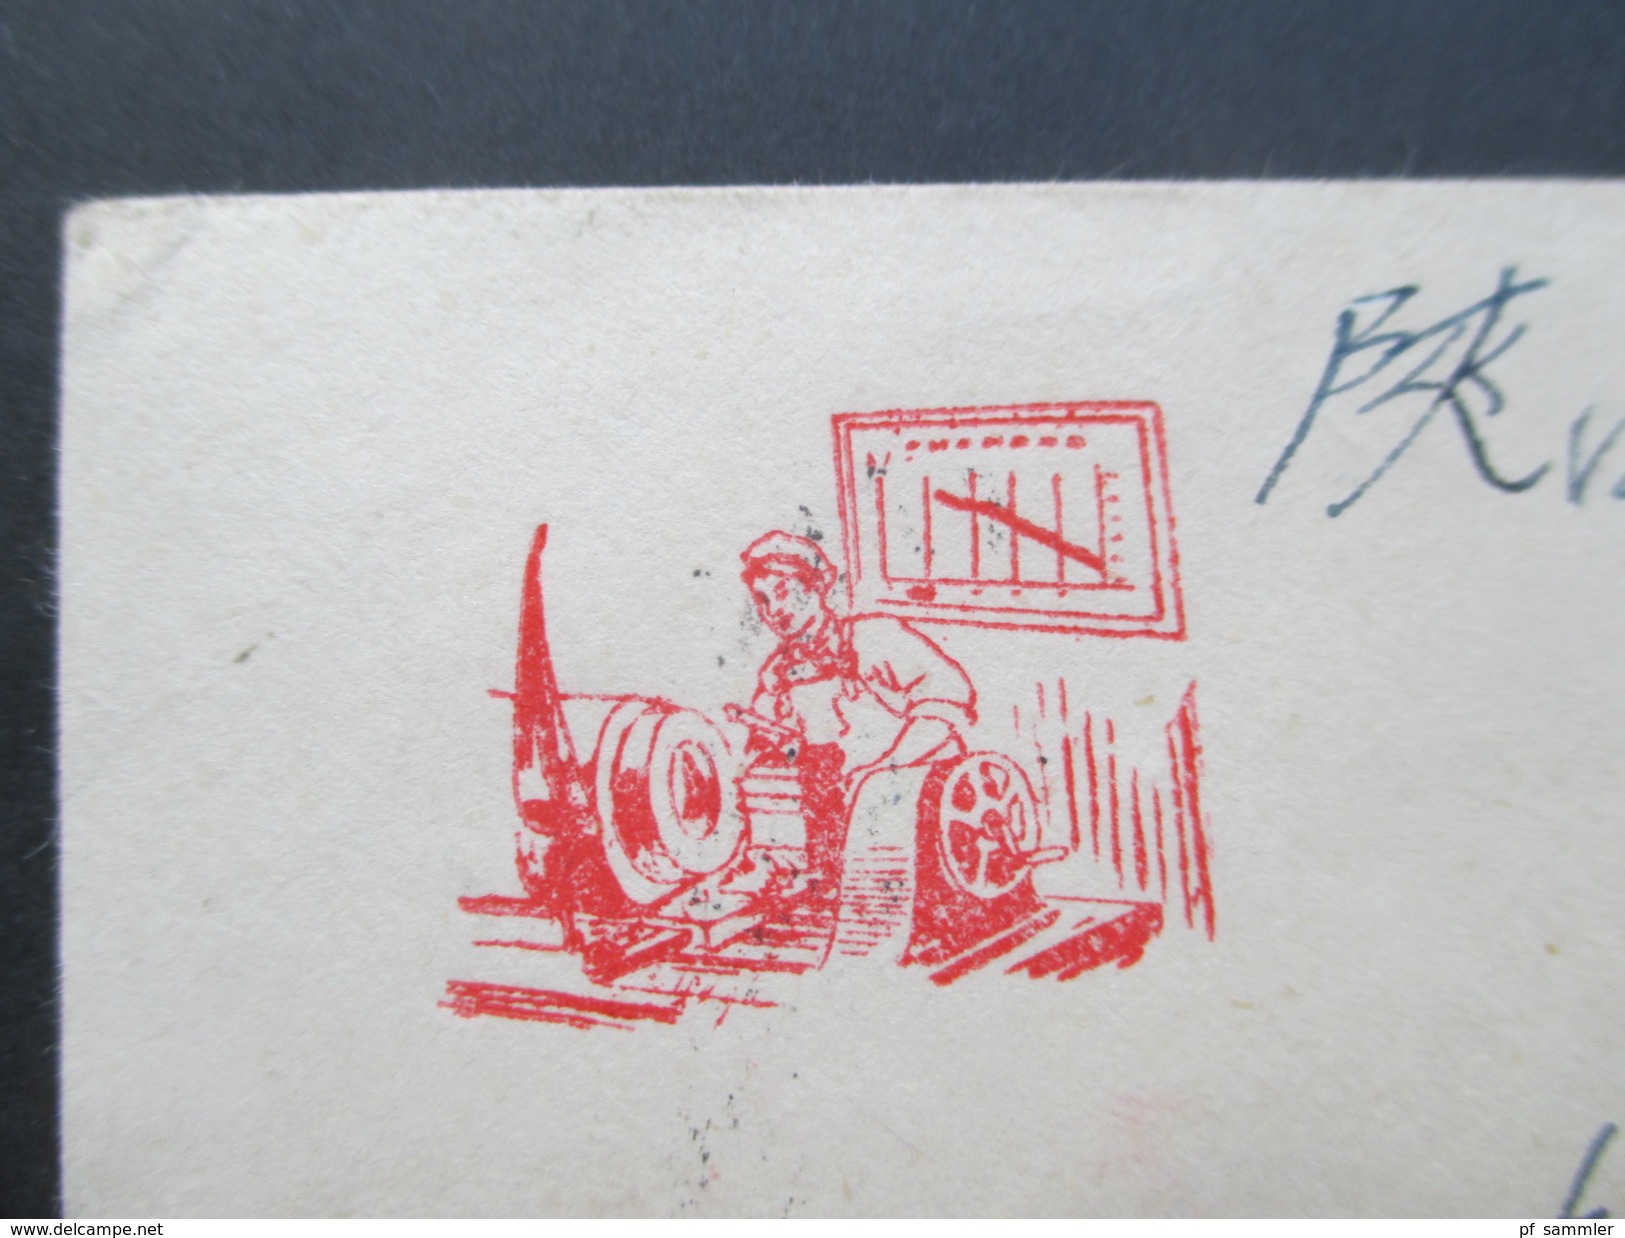 Volksrepublik China 1950er Jahre Militärpost 21 Belege! Viele Stempel / Zierumschläge. Seltene Stücke! Toller Posten!! - Lettres & Documents